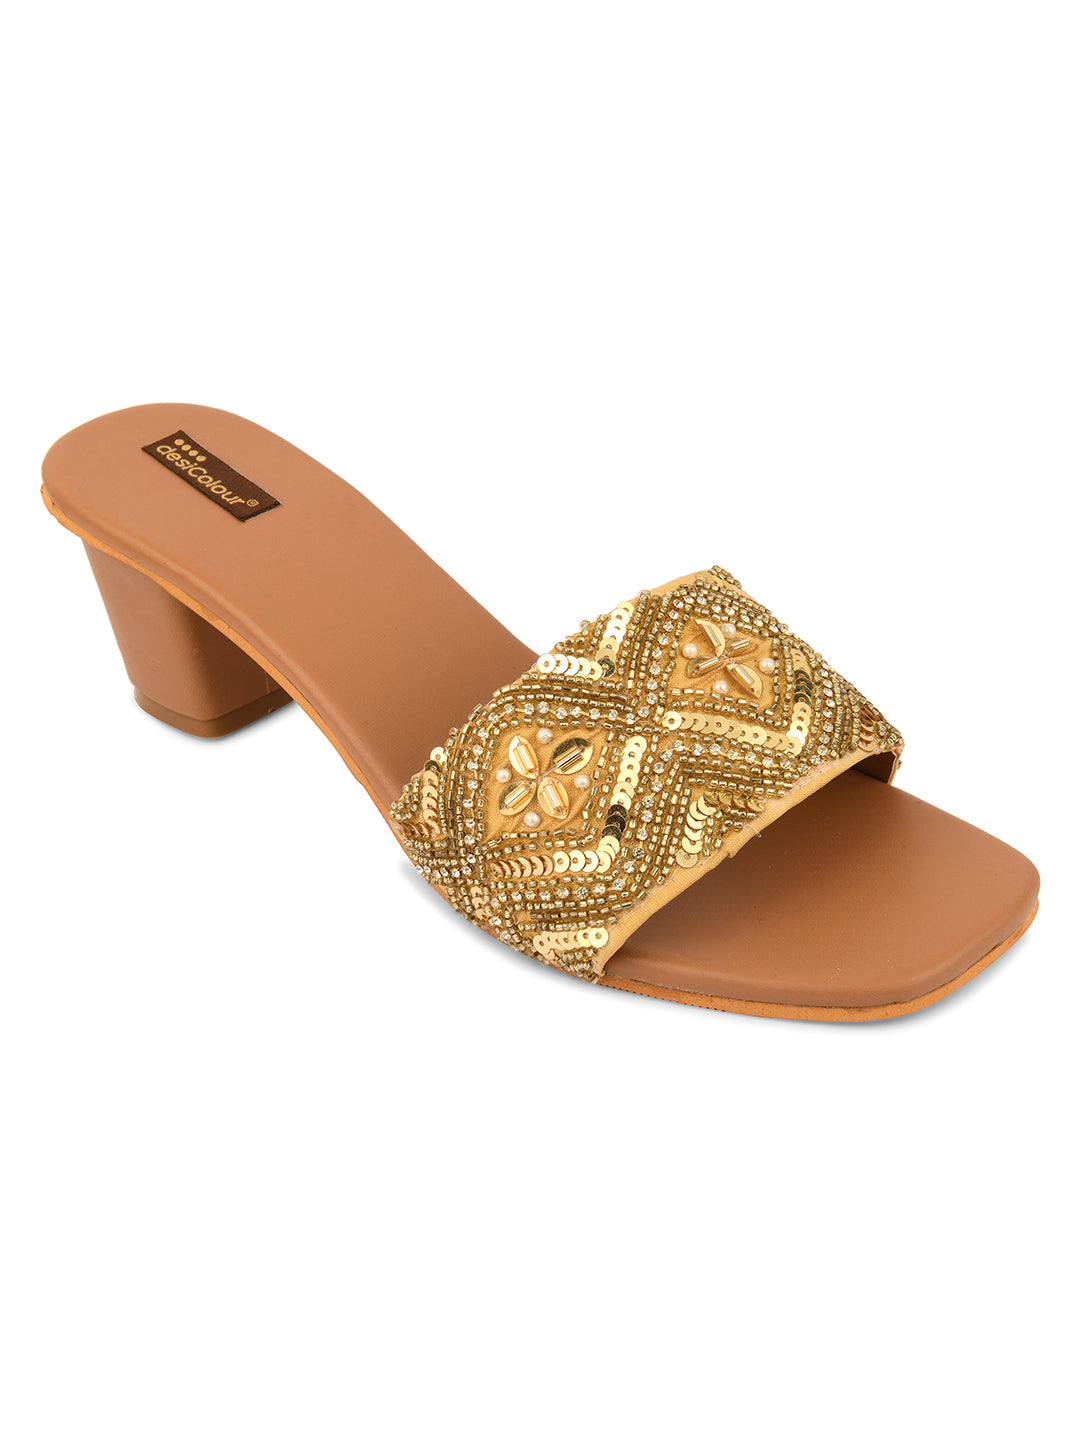 Women's Gold Heels  Indian Ethnic Comfort Footwear - Desi Colour